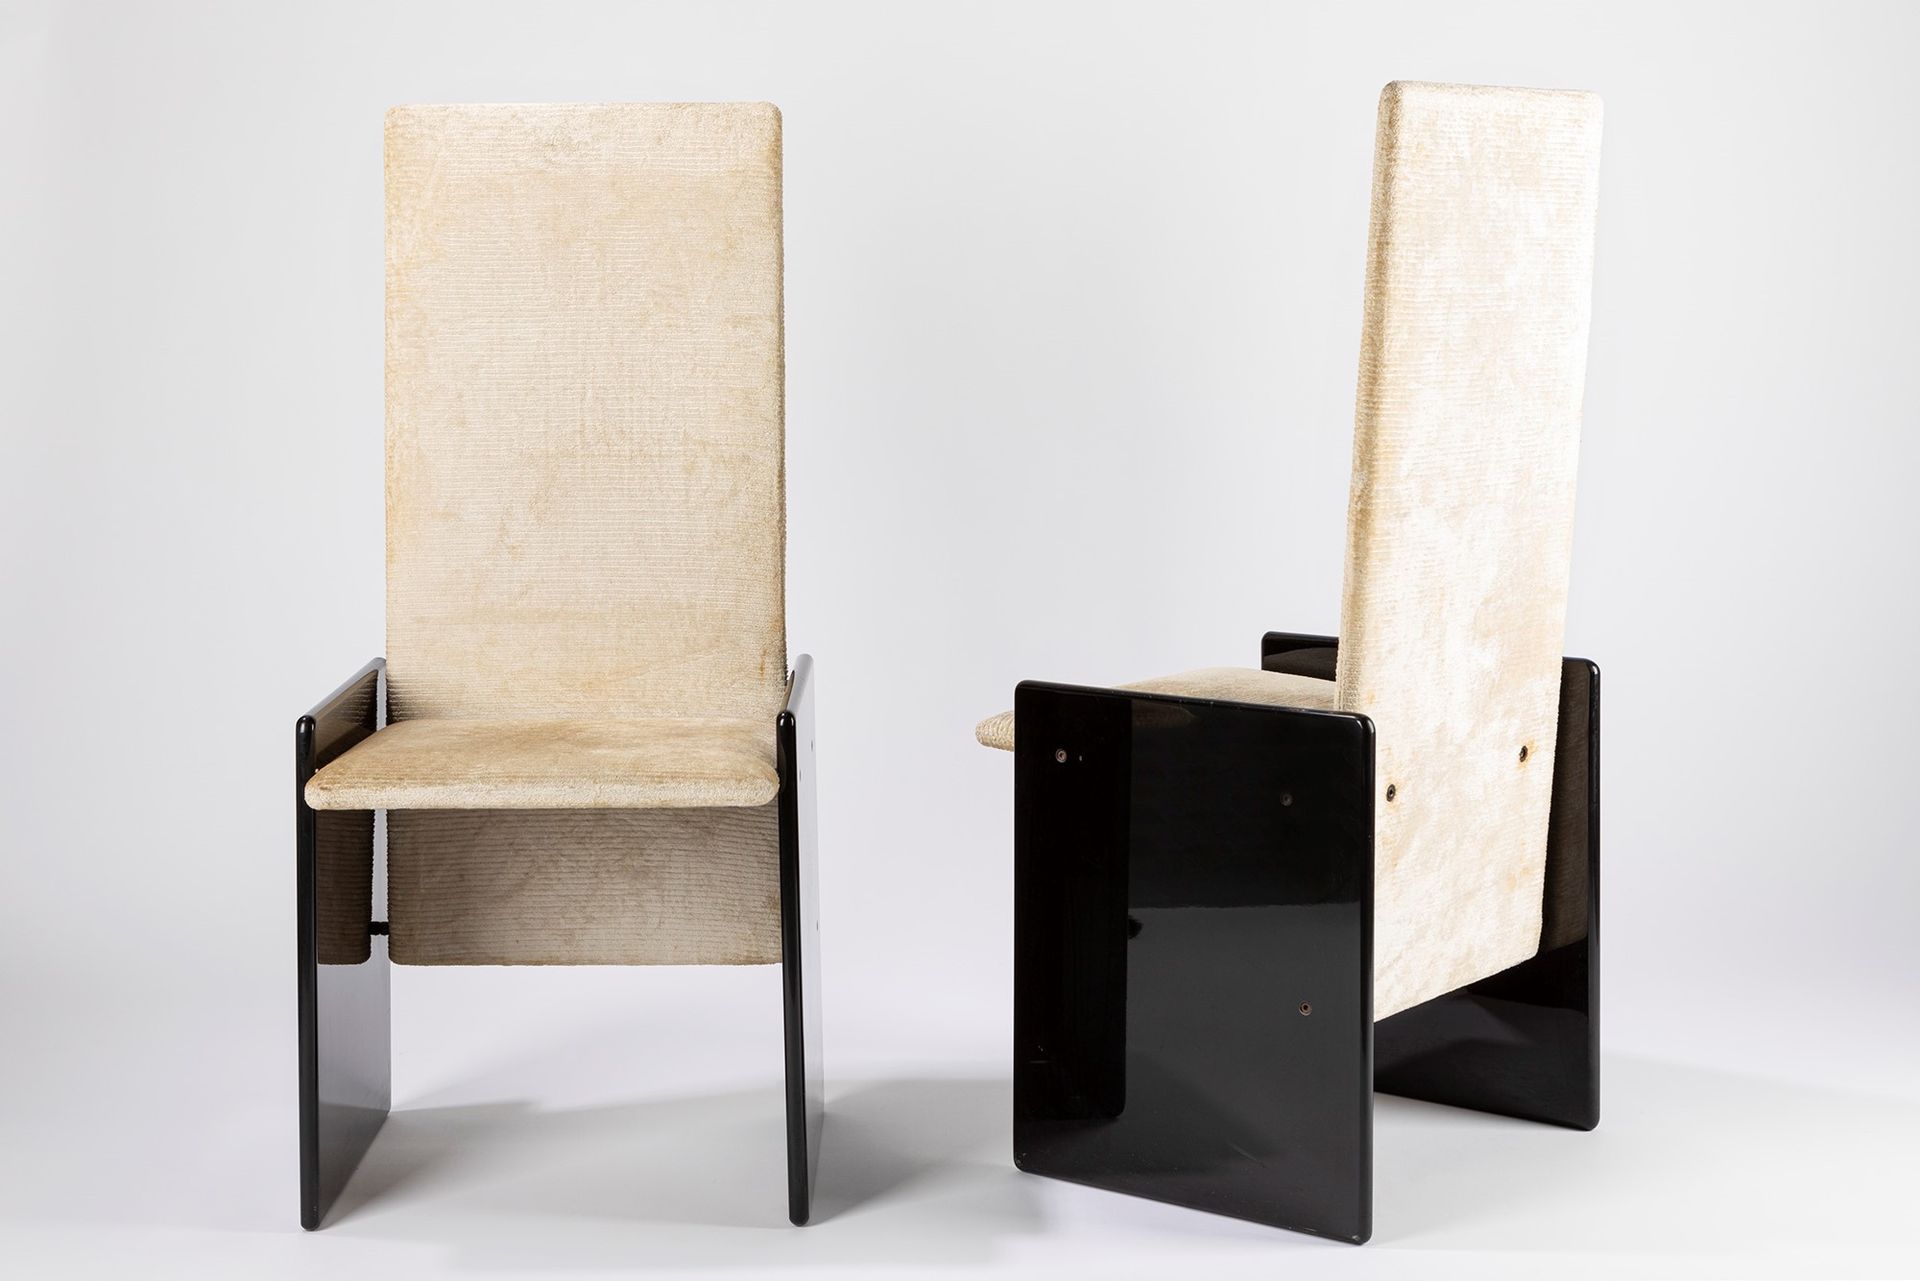 Kazuhide TAKAHAMA Kazuki, 1969

h 108 x 47 x 47 cm
四张椅子。漆黑的木头和冰丝绒。

西蒙-加维纳制造。